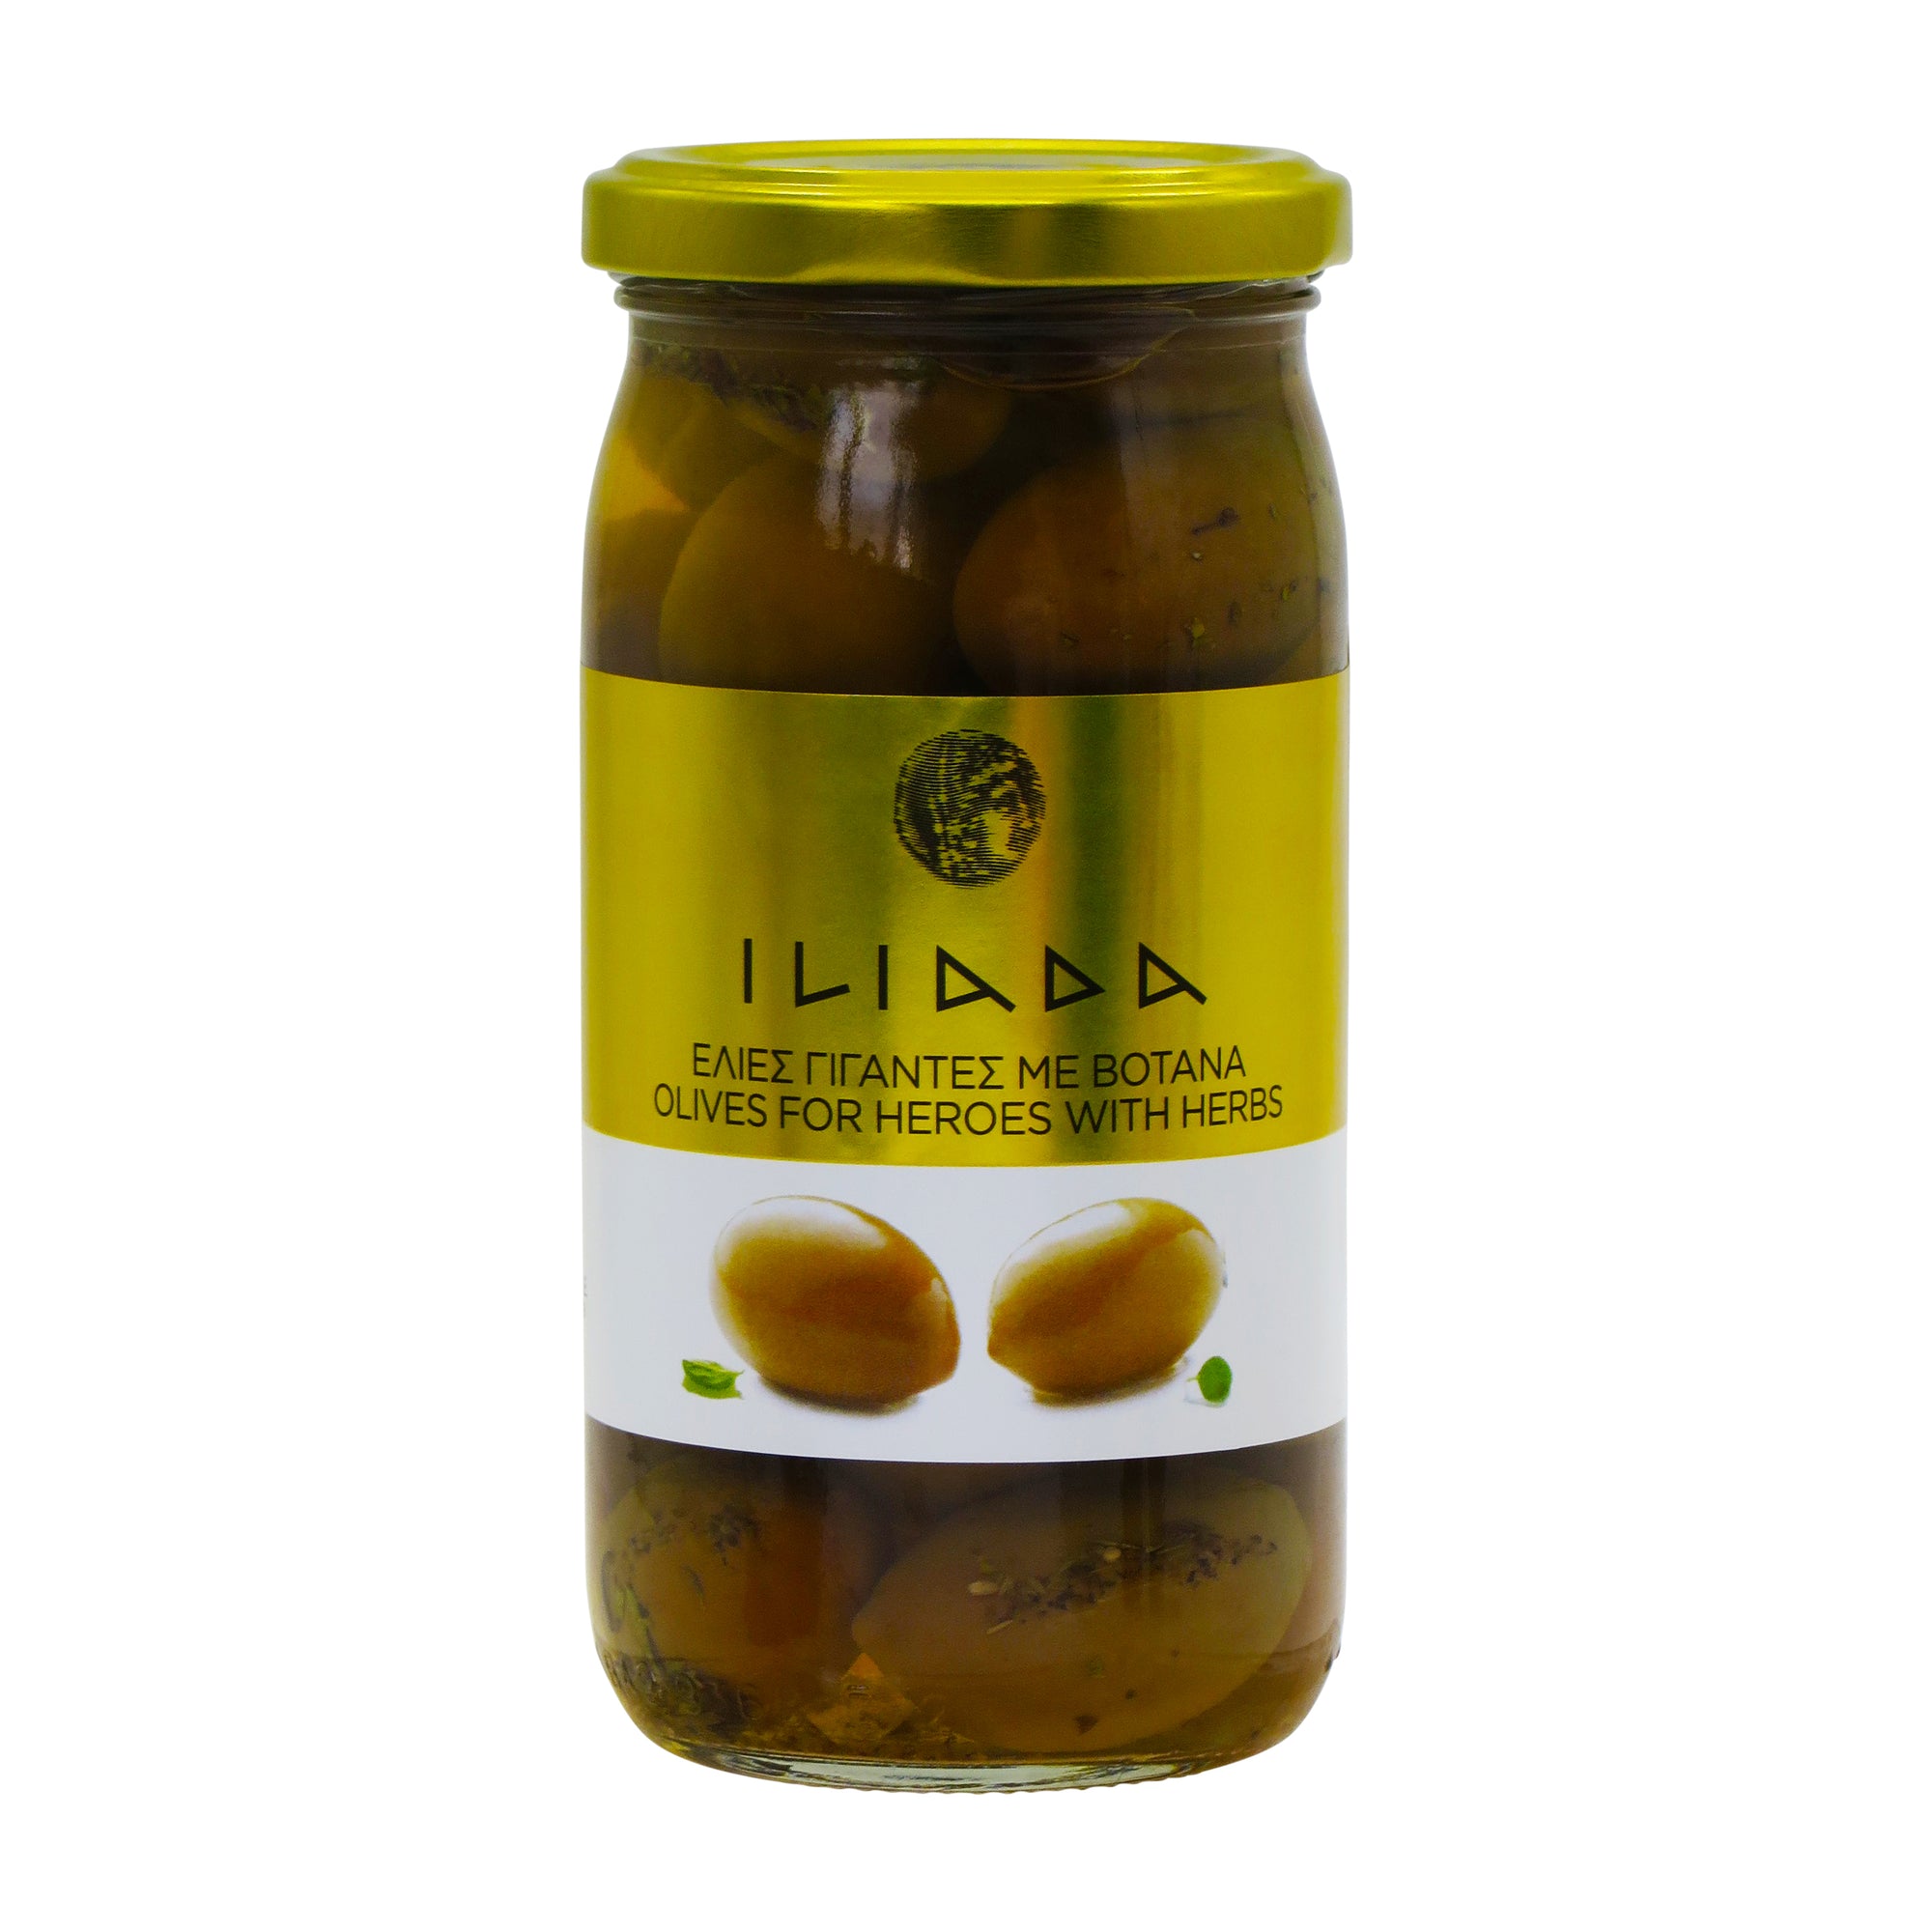 Goliath Olives with Herbs 'Iliada' 370g